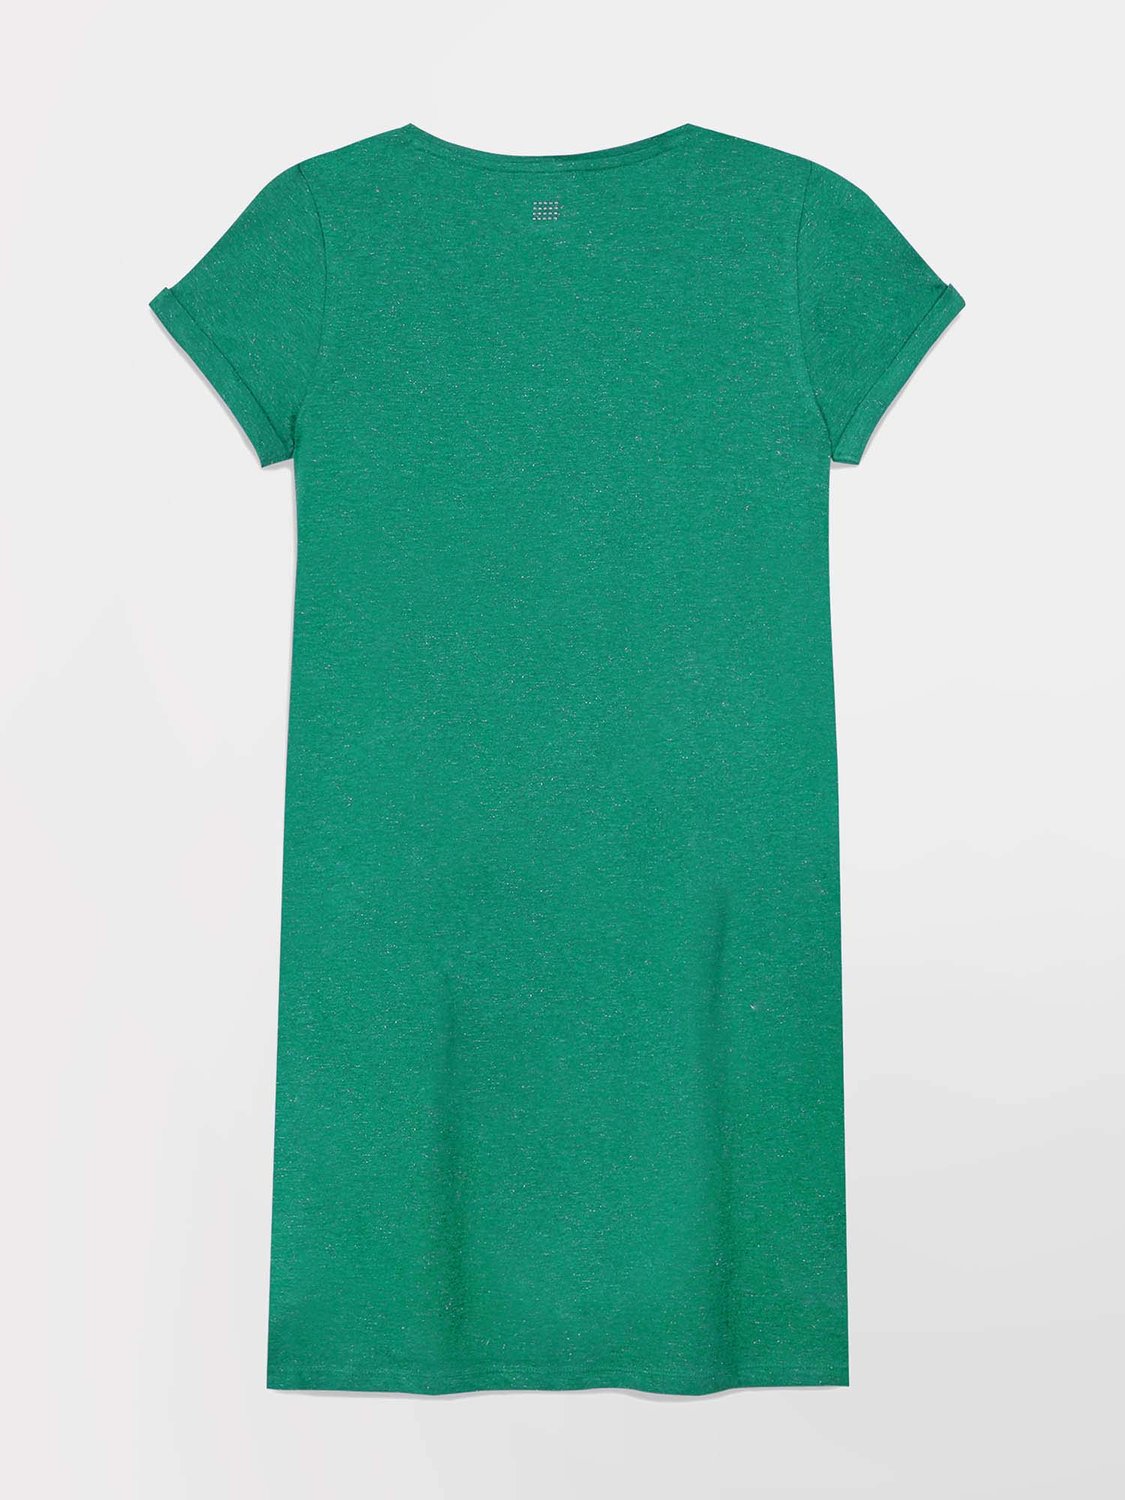 Robe Femme Jersey Coton Vert